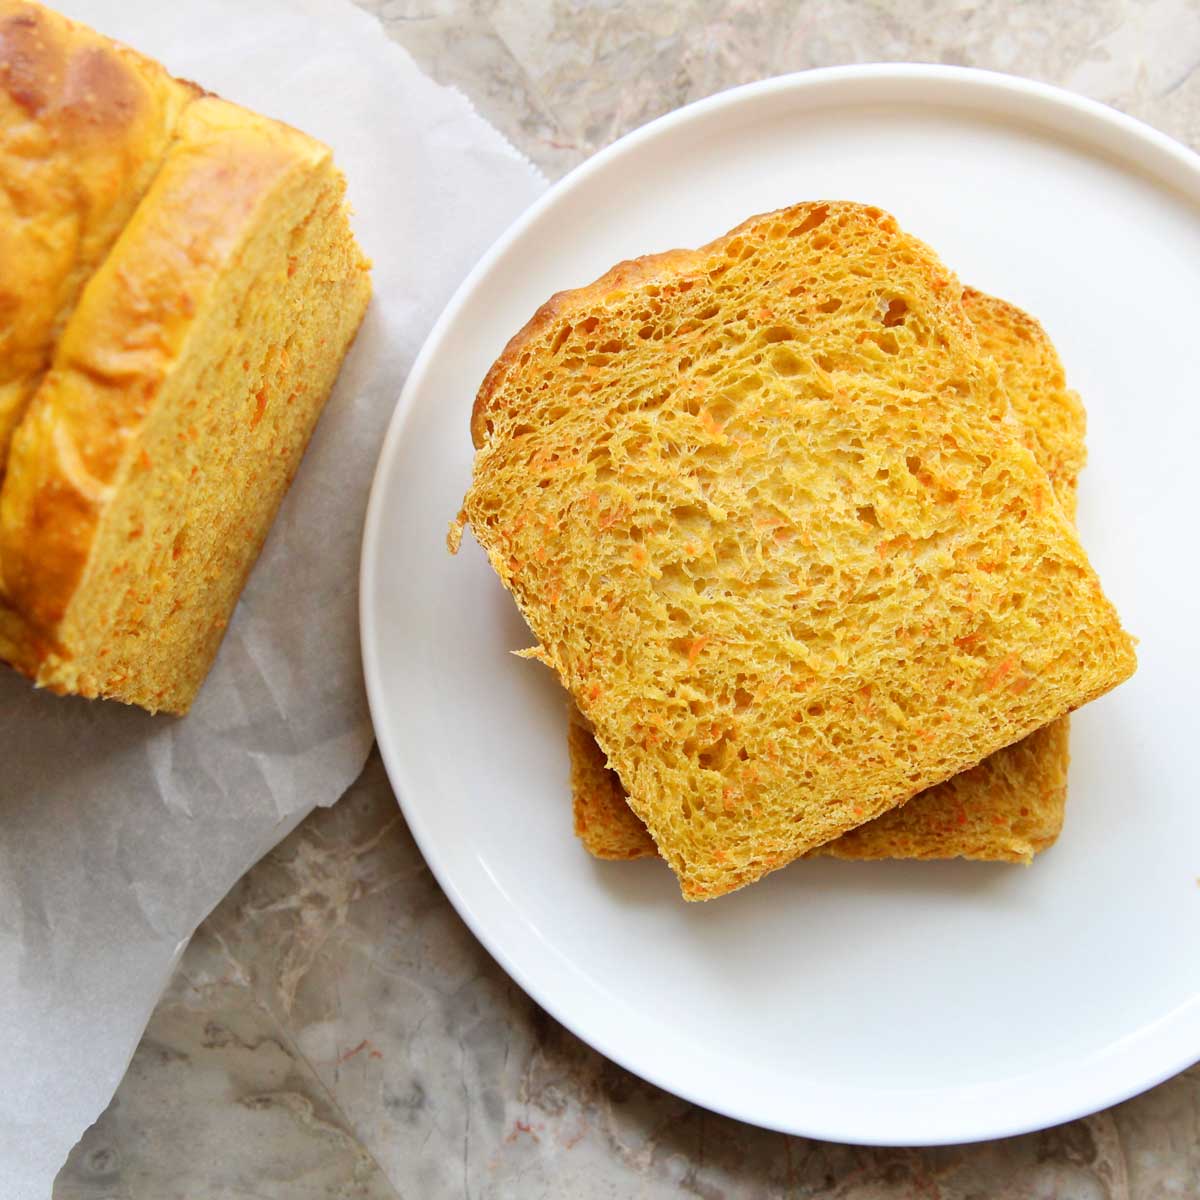 Healthy Carrot Sandwich Bread (Yeast Bread) Recipe - Carrot Swiss Roll Cake